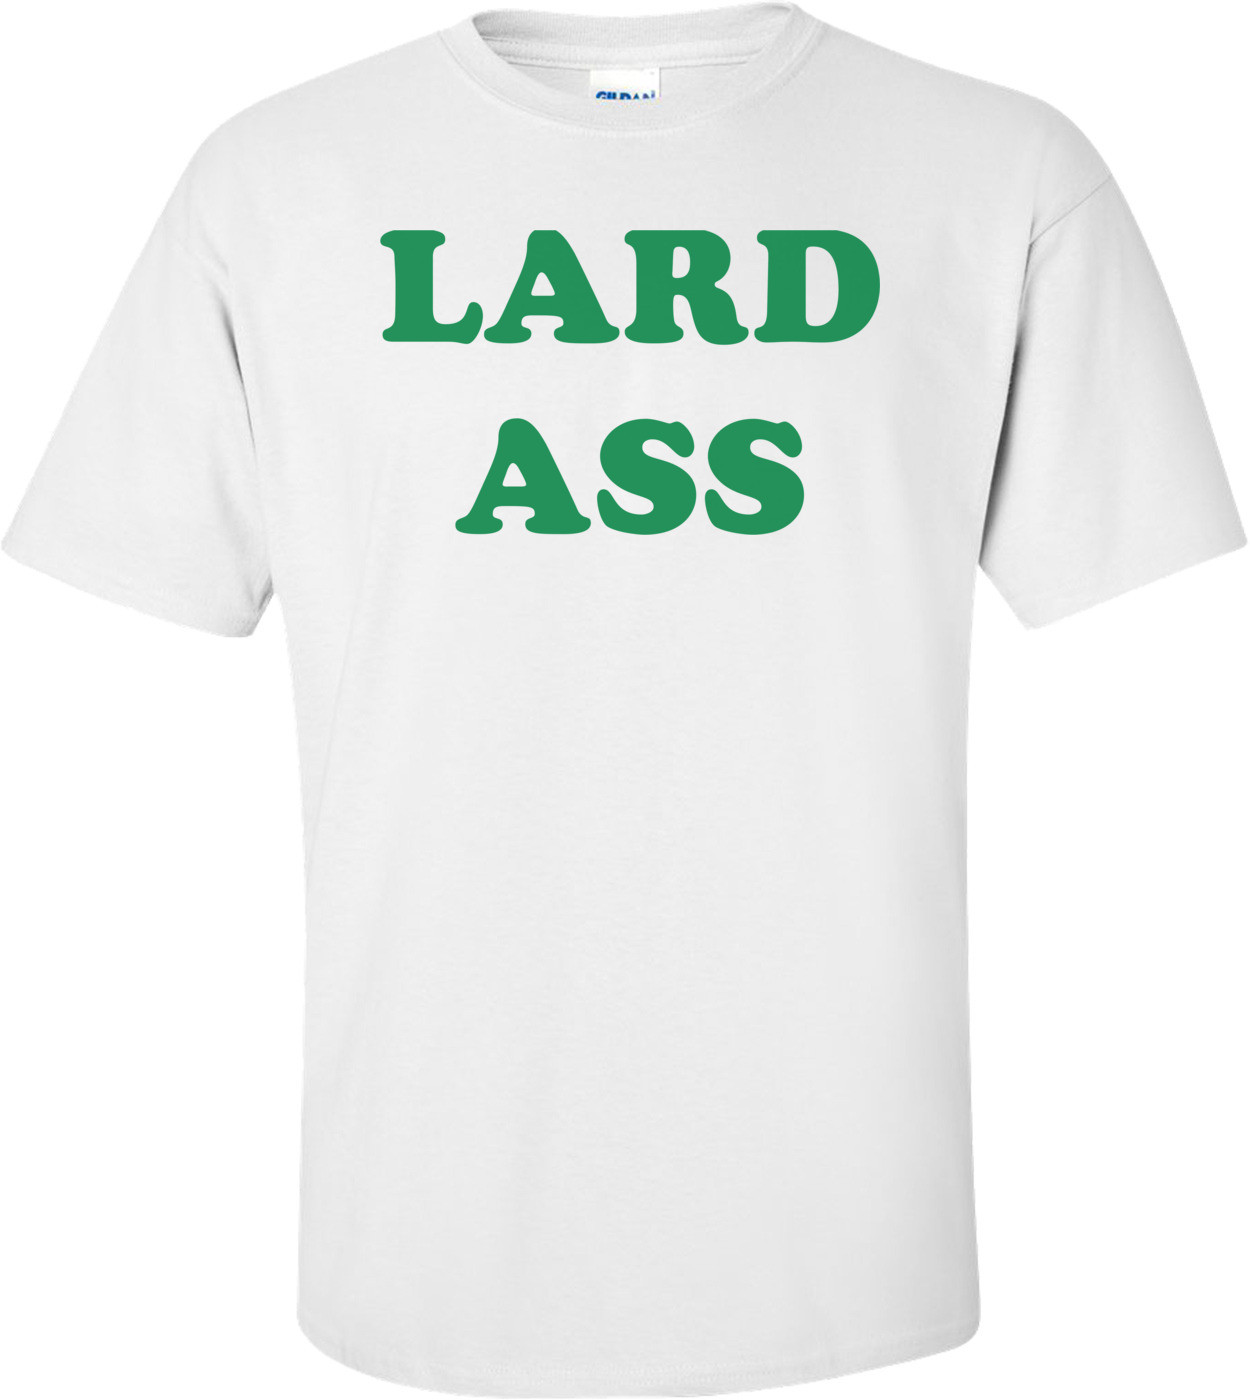 LARD ASS Stand By Me 80's T-Shirt